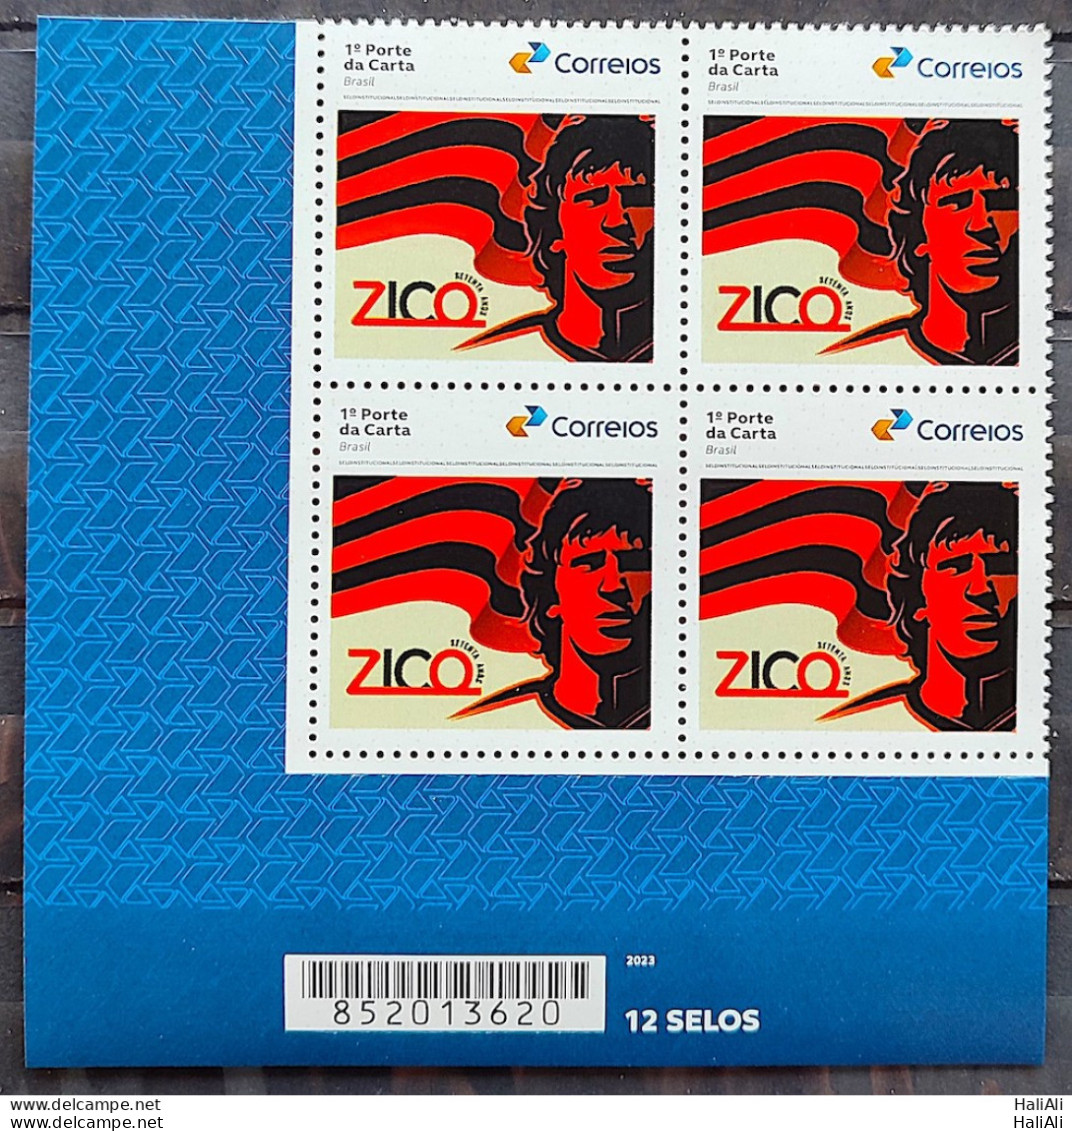 SI 03 Brazil Institutional Stamp Zico 70 Years Flamengo Soccer Football 2023 Block Of 4 Bar Code - Gepersonaliseerde Postzegels